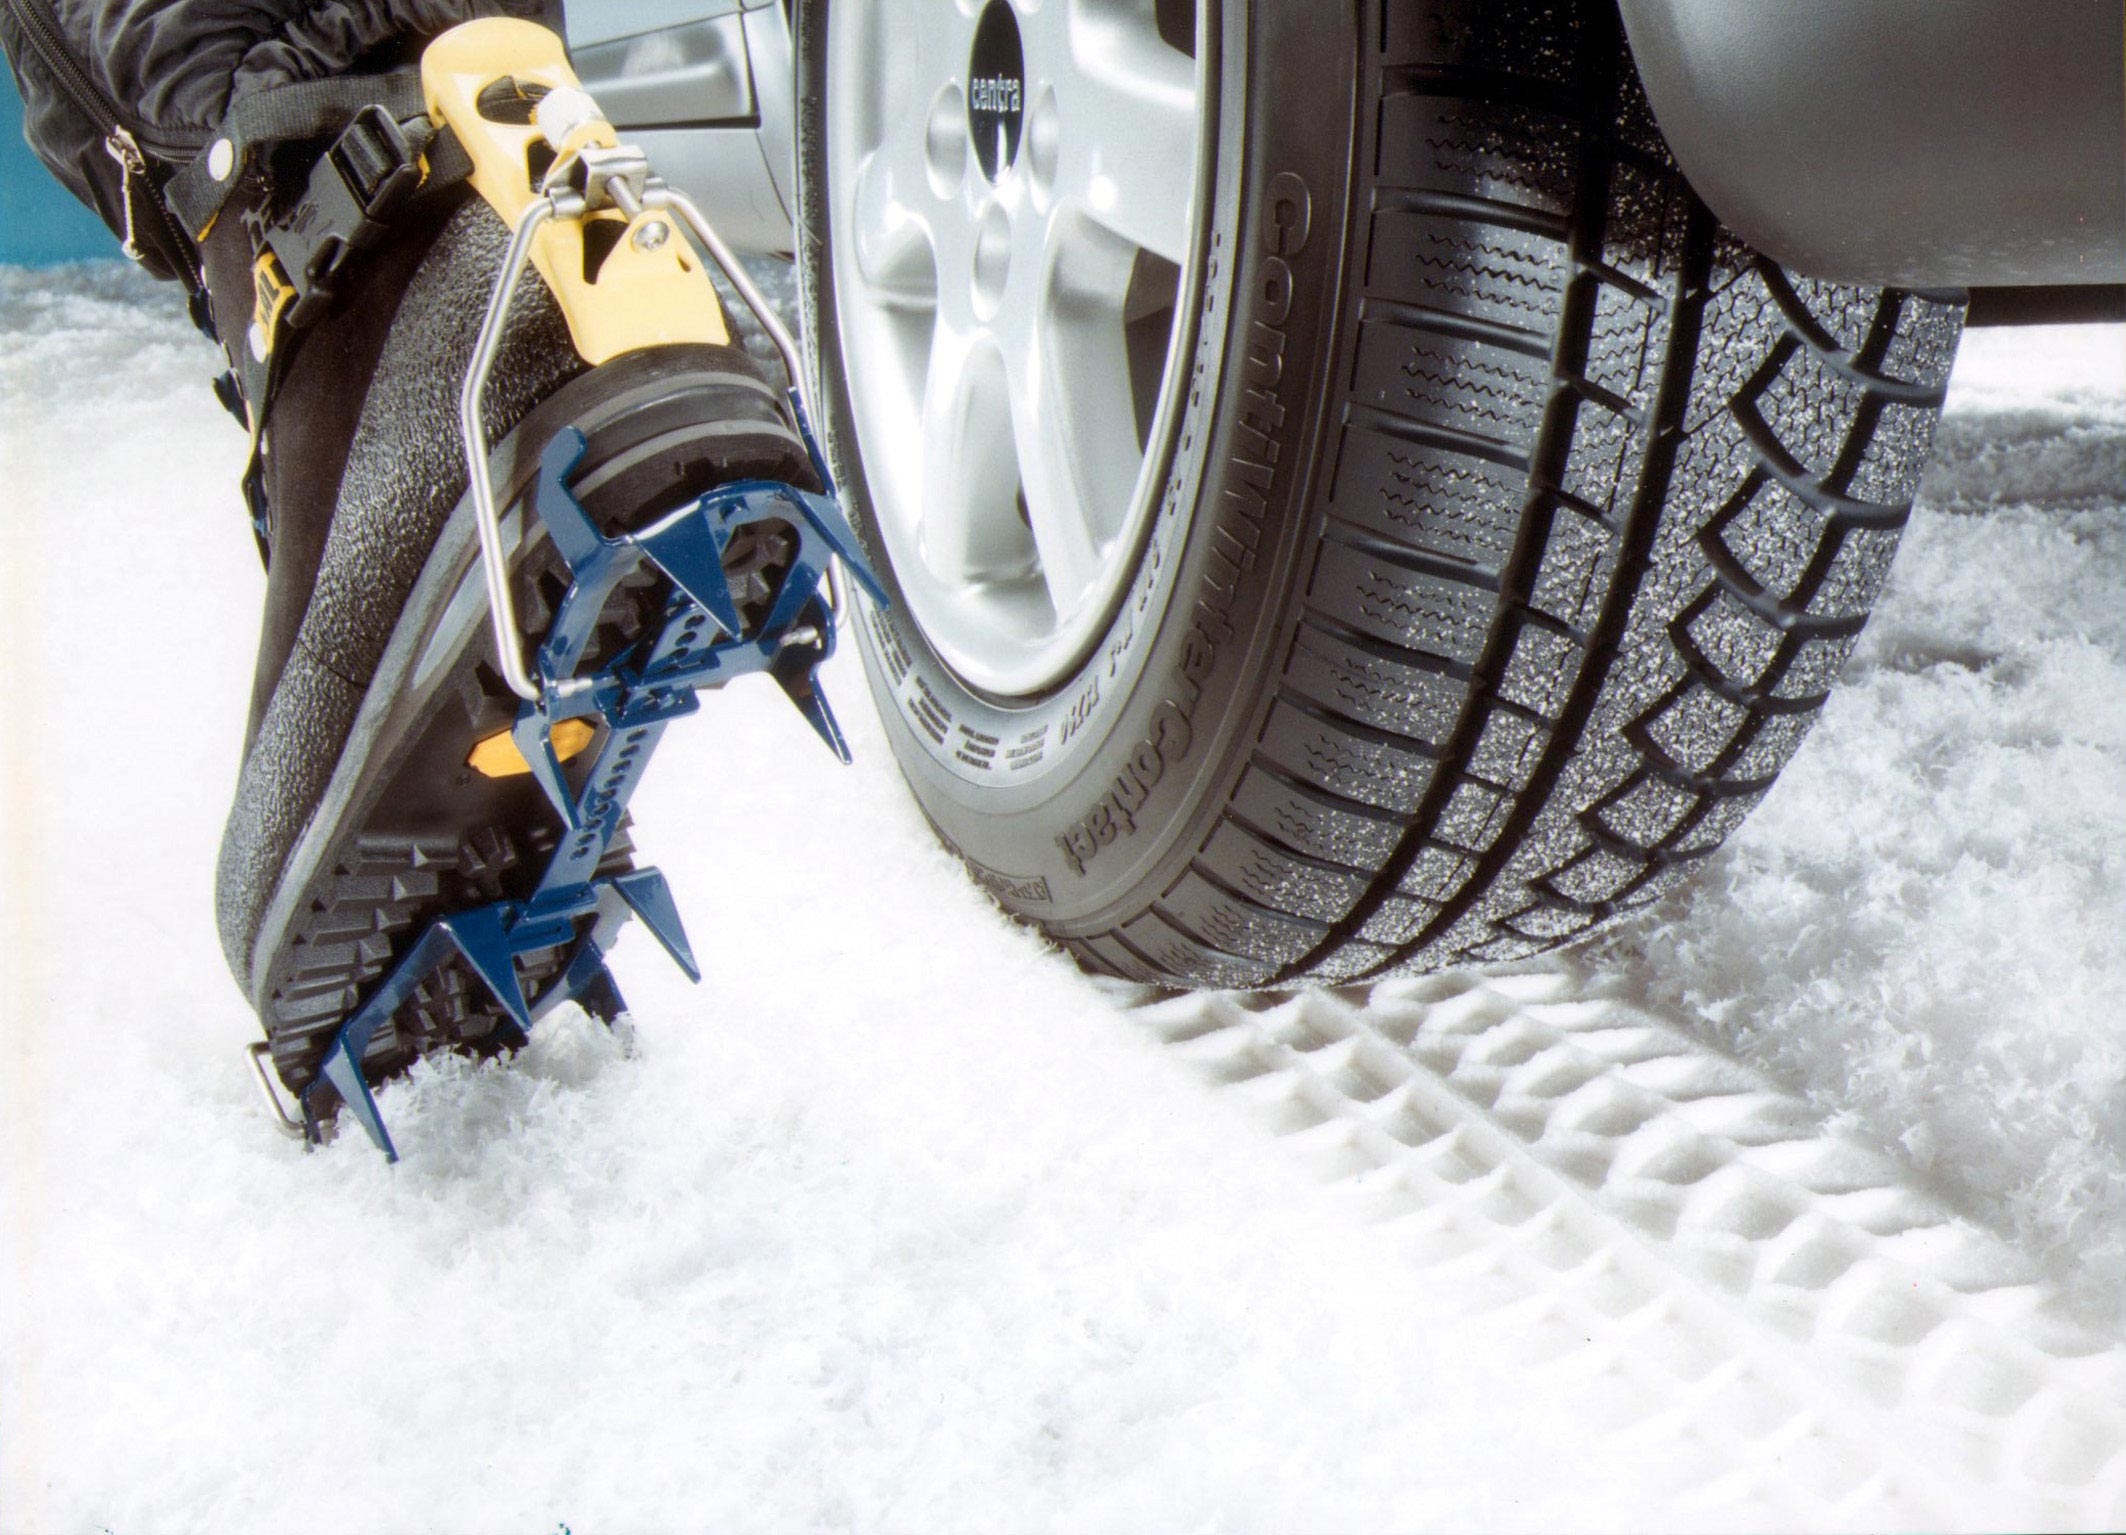 Переобуть резину спб. Шины для езды по льду. Сцепление шин с дорогой. Зимняя резина в снегу. Зимние колеса для автомобиля.